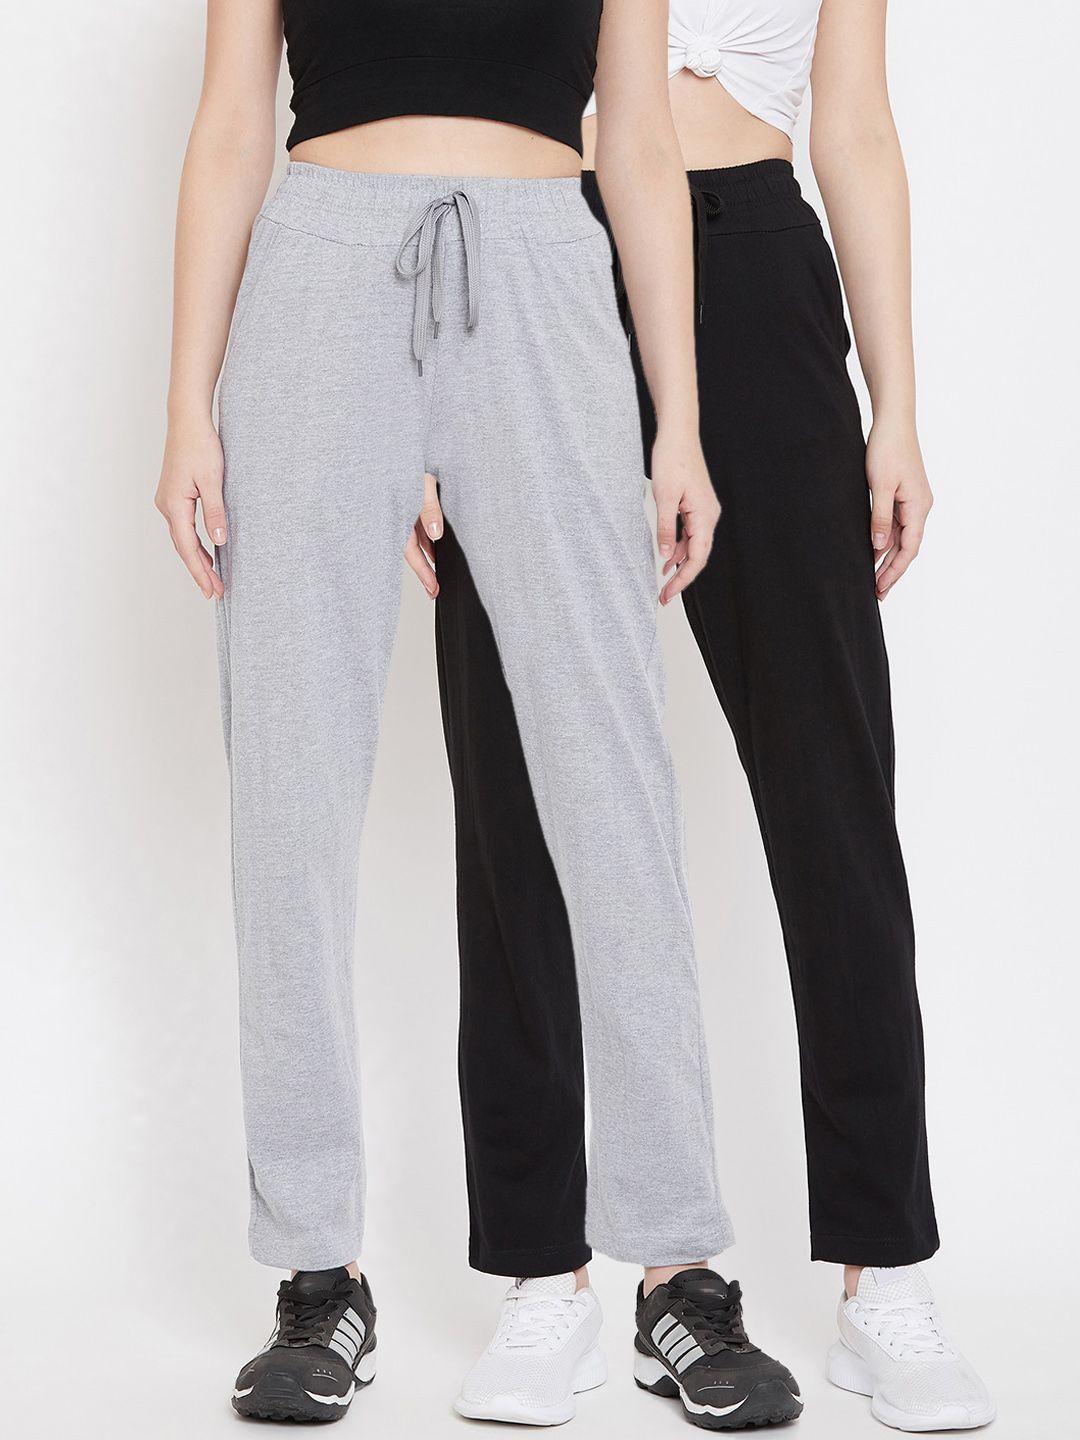 stylestone women pack of 2 black & grey melange solid track pants